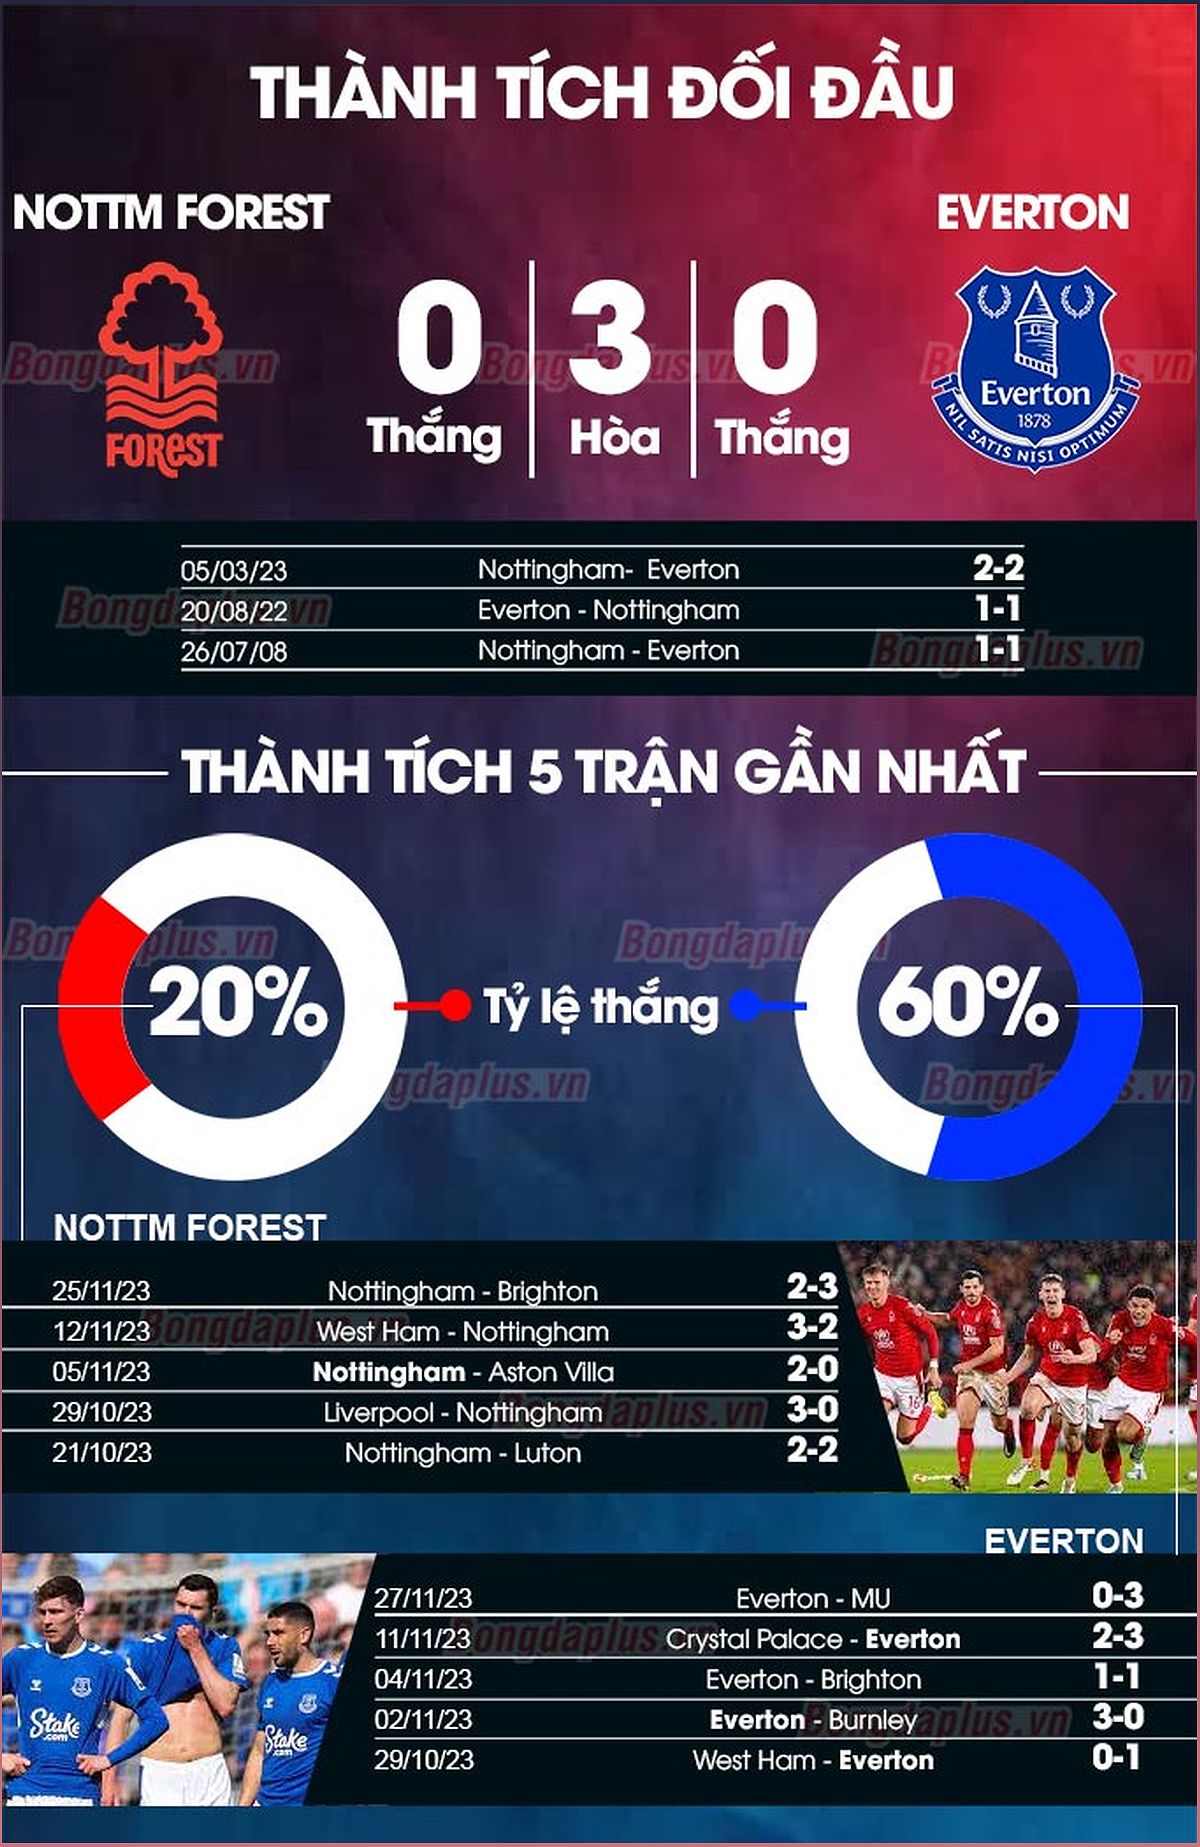 Nhận định trận đấu Nottingham vs Everton: Phân tích phong độ, lực lượng và dự đoán tỉ số - 204001768